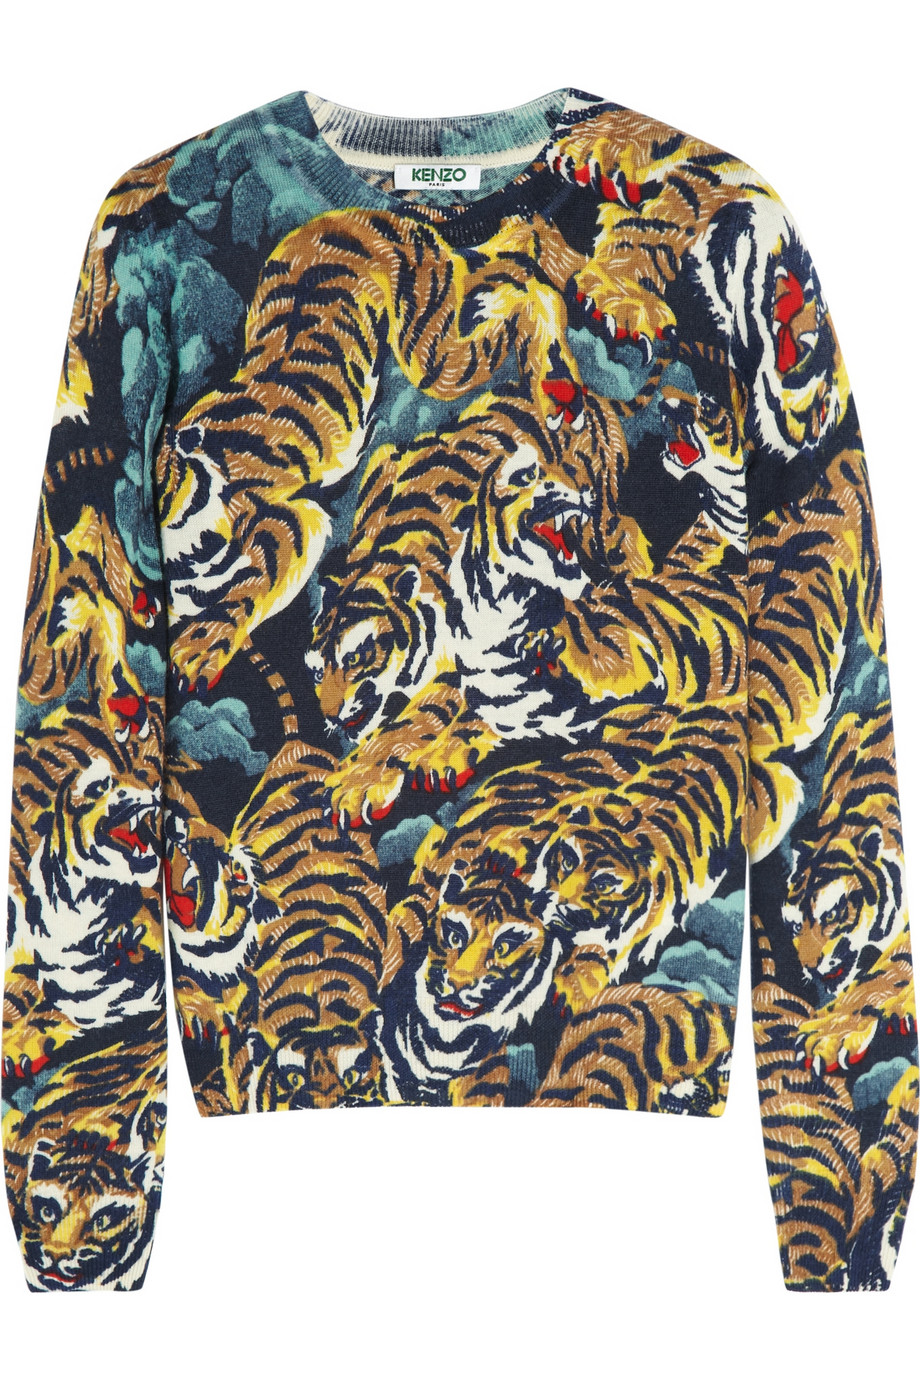 kenzo tiger print jumper